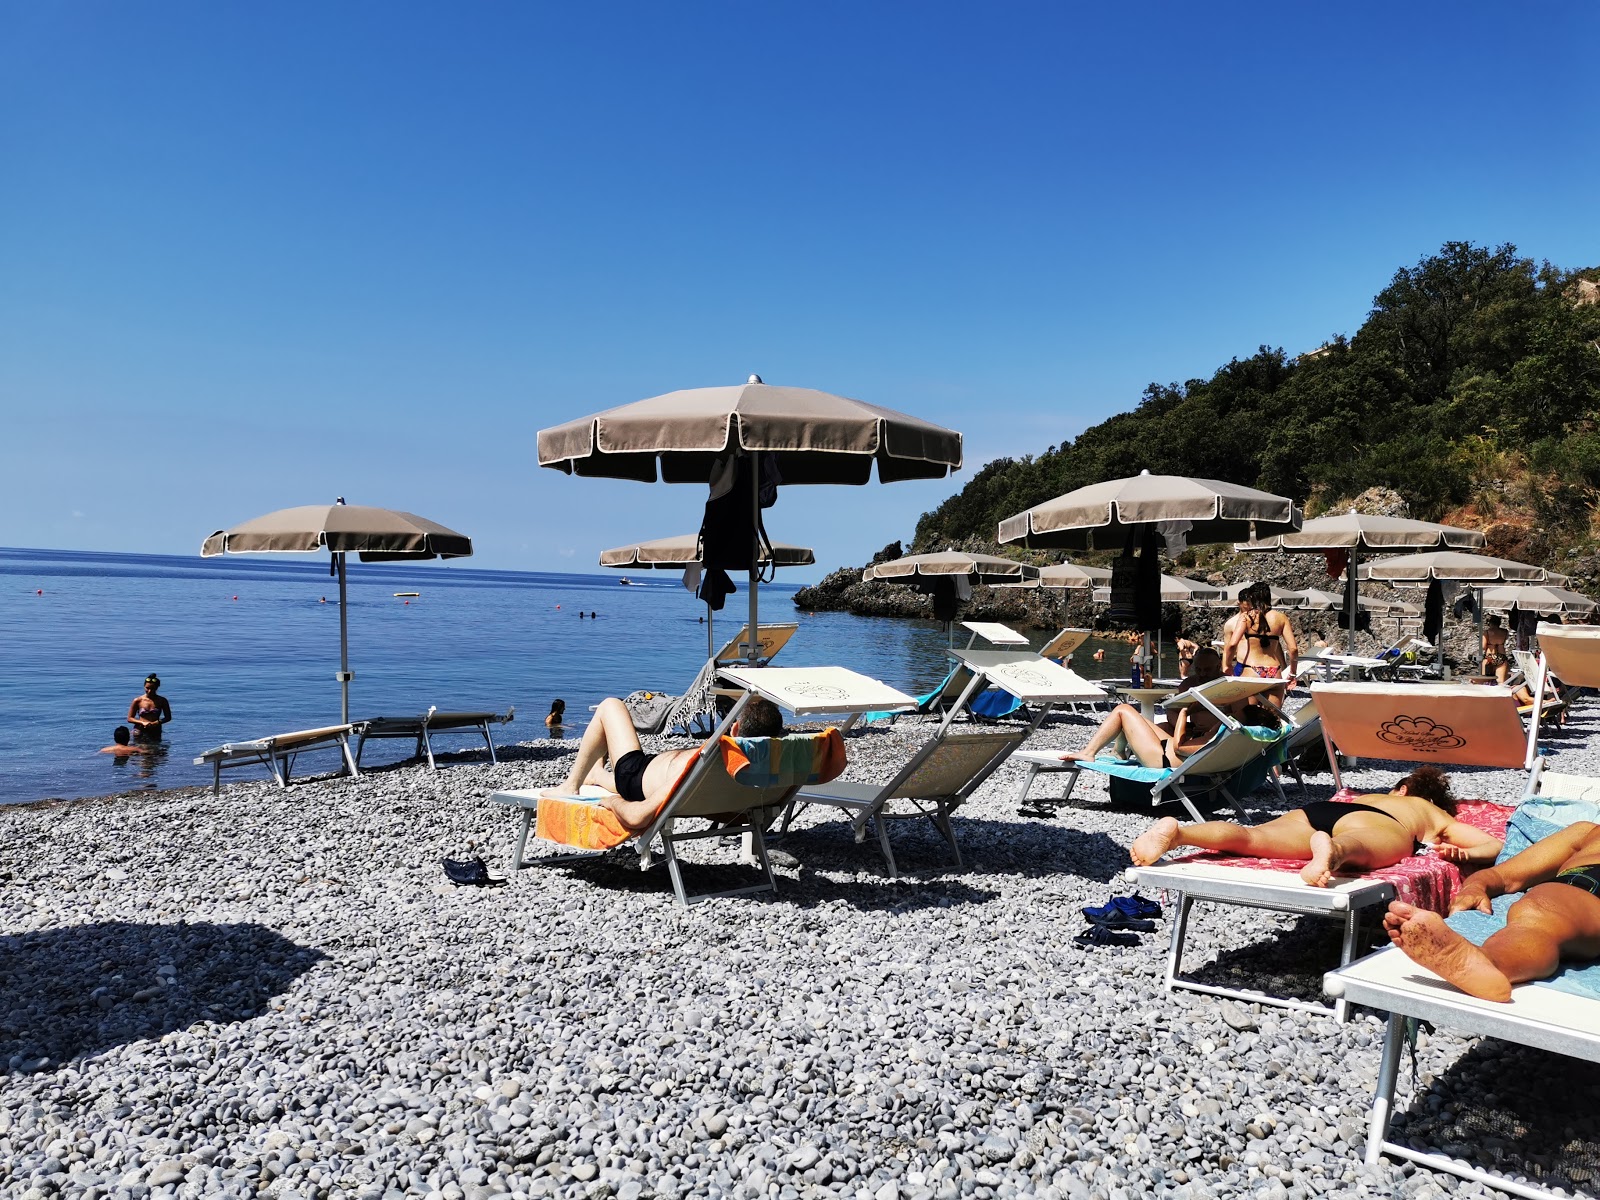 Spiaggia Portacquafridda'in fotoğrafı uçurumlarla desteklenmiş